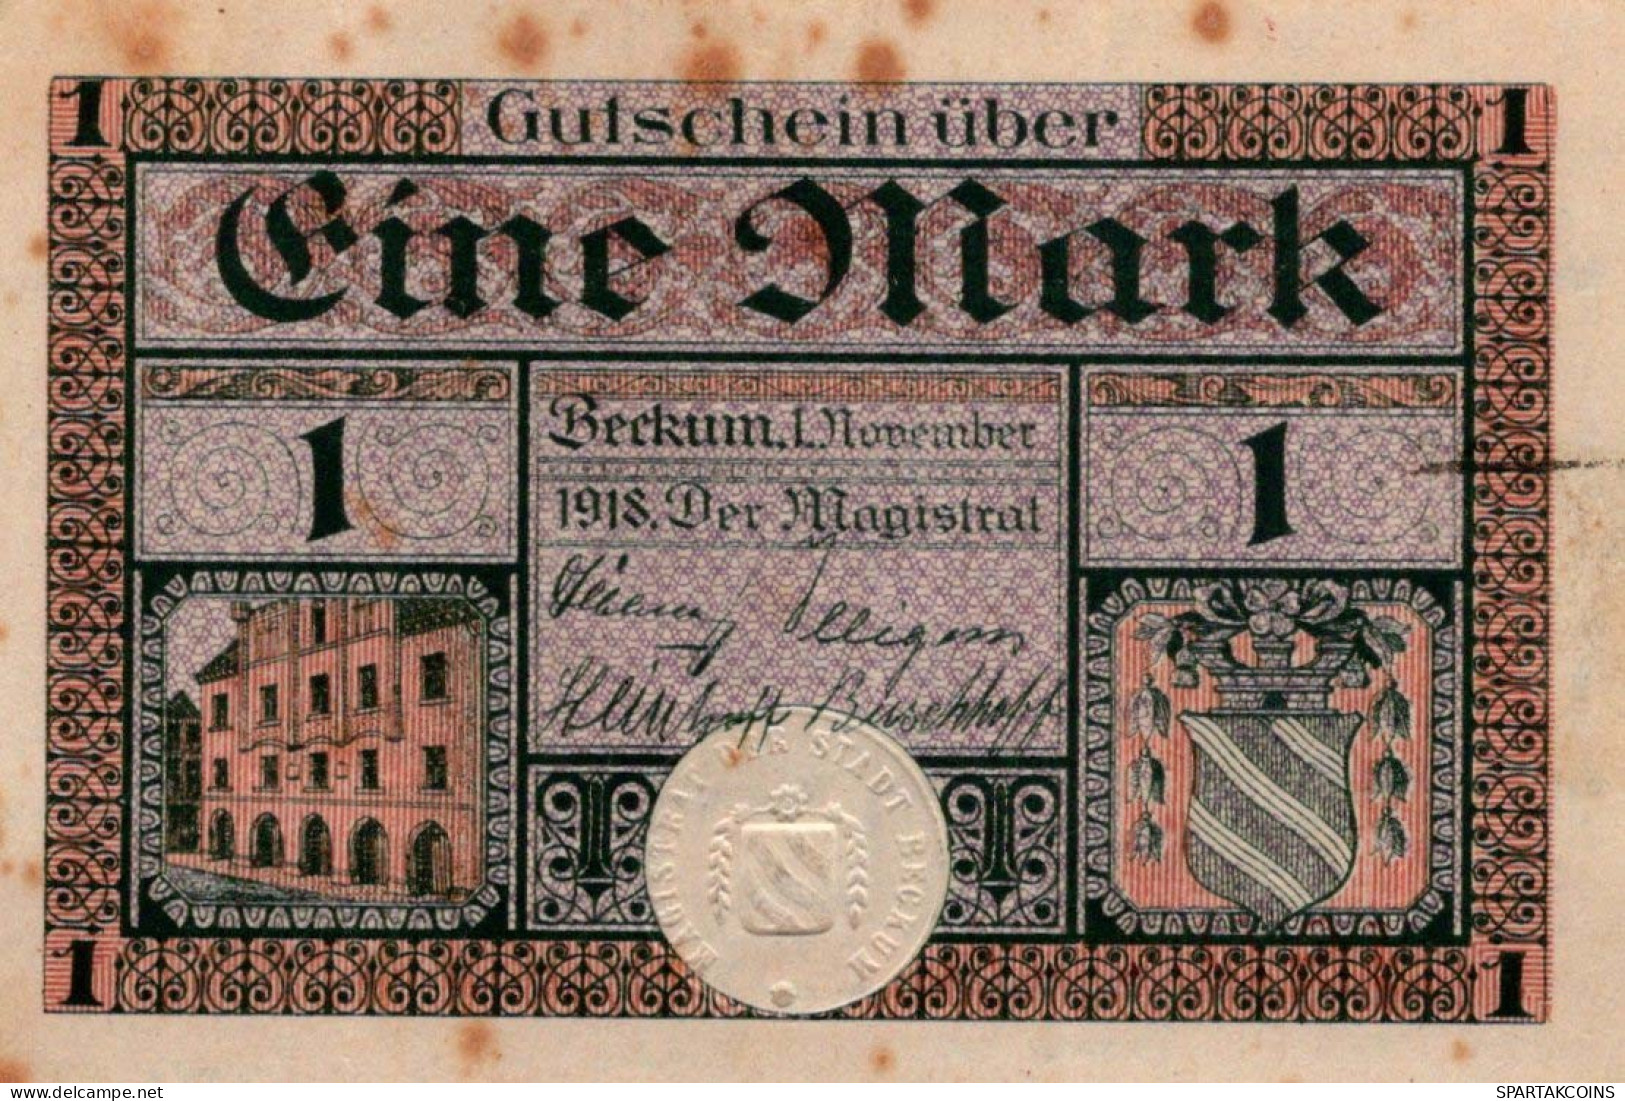 1 MARK 1918 Stadt BECKUM Westphalia DEUTSCHLAND Notgeld Banknote #PG347 - [11] Emissioni Locali